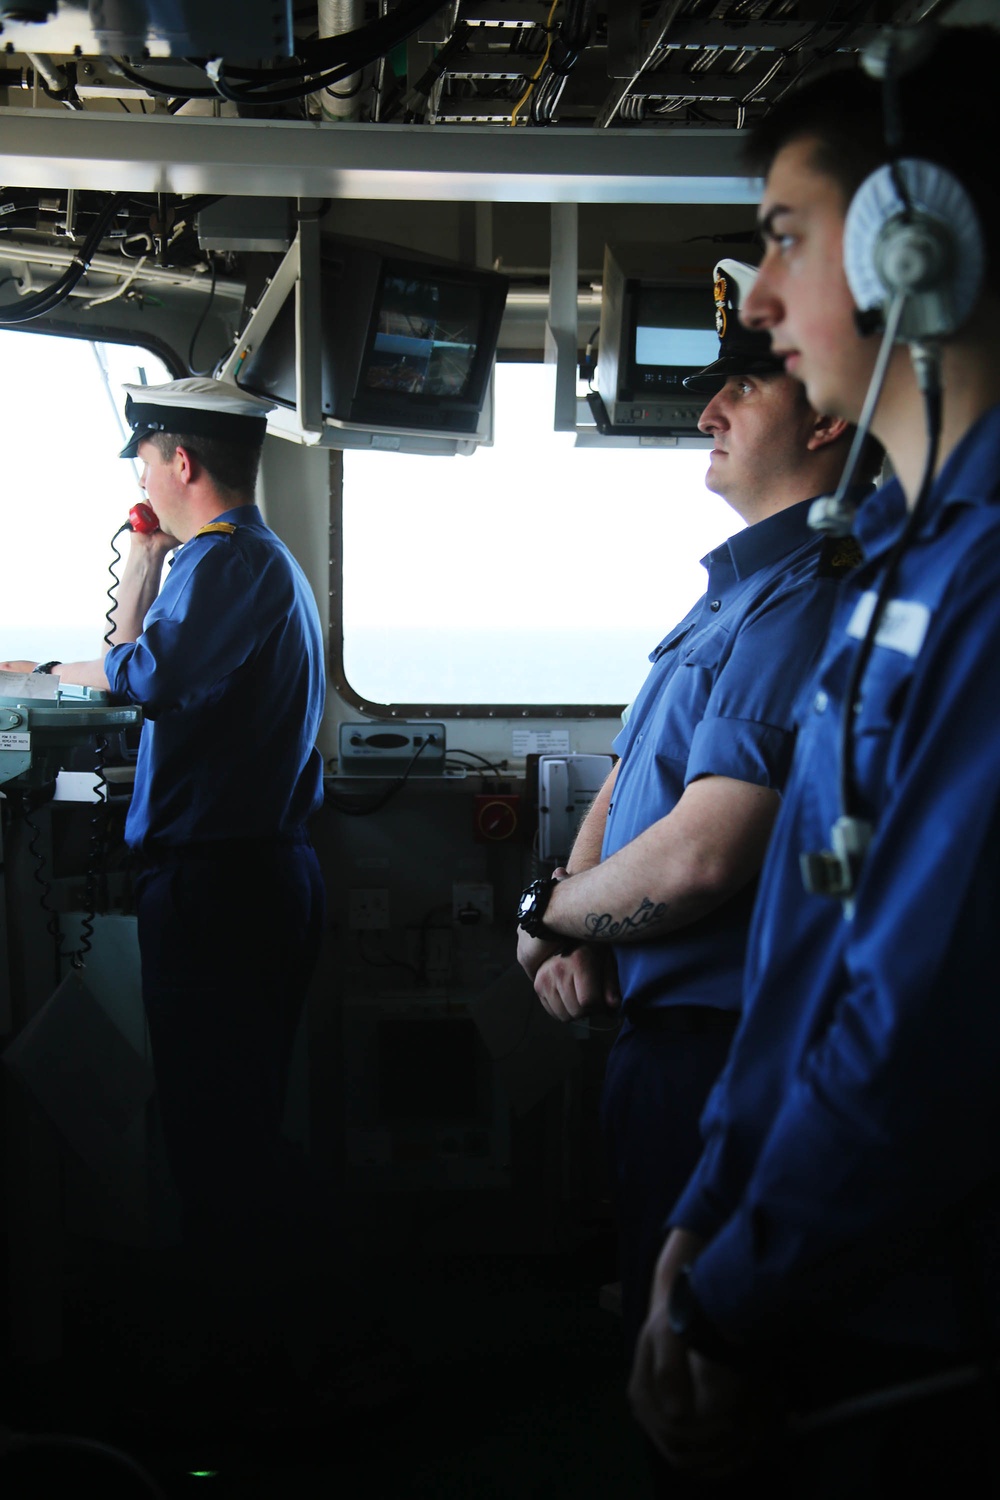 BALTOPS 2015 aboard the HMS Ocean